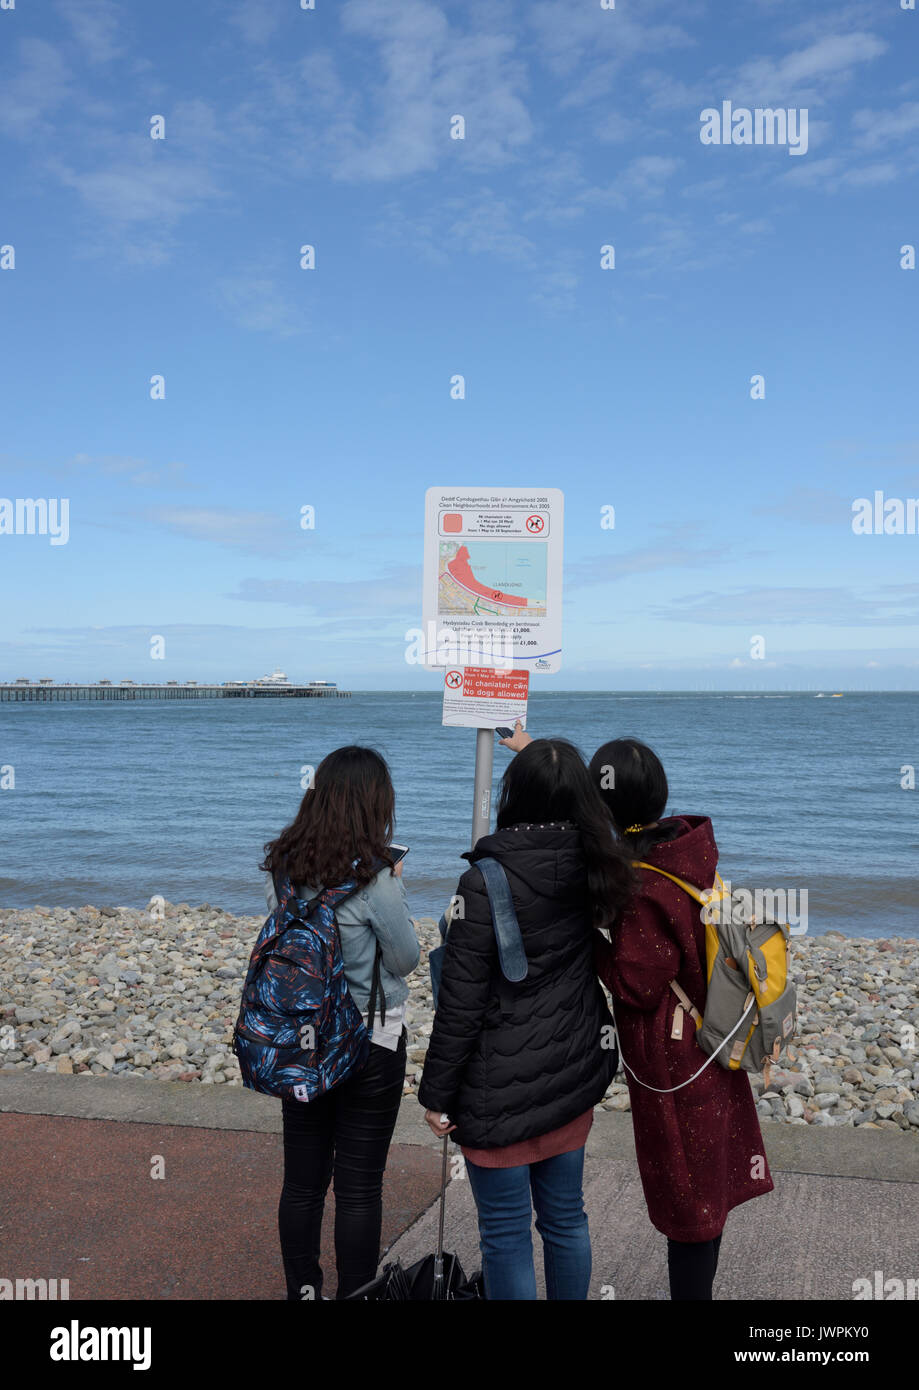 Trois jeunes femmes touristes debout sur la promenade regardant l'avertissement, une femme pointant à llandudno conwy nord du pays de galles royaume-uni Banque D'Images